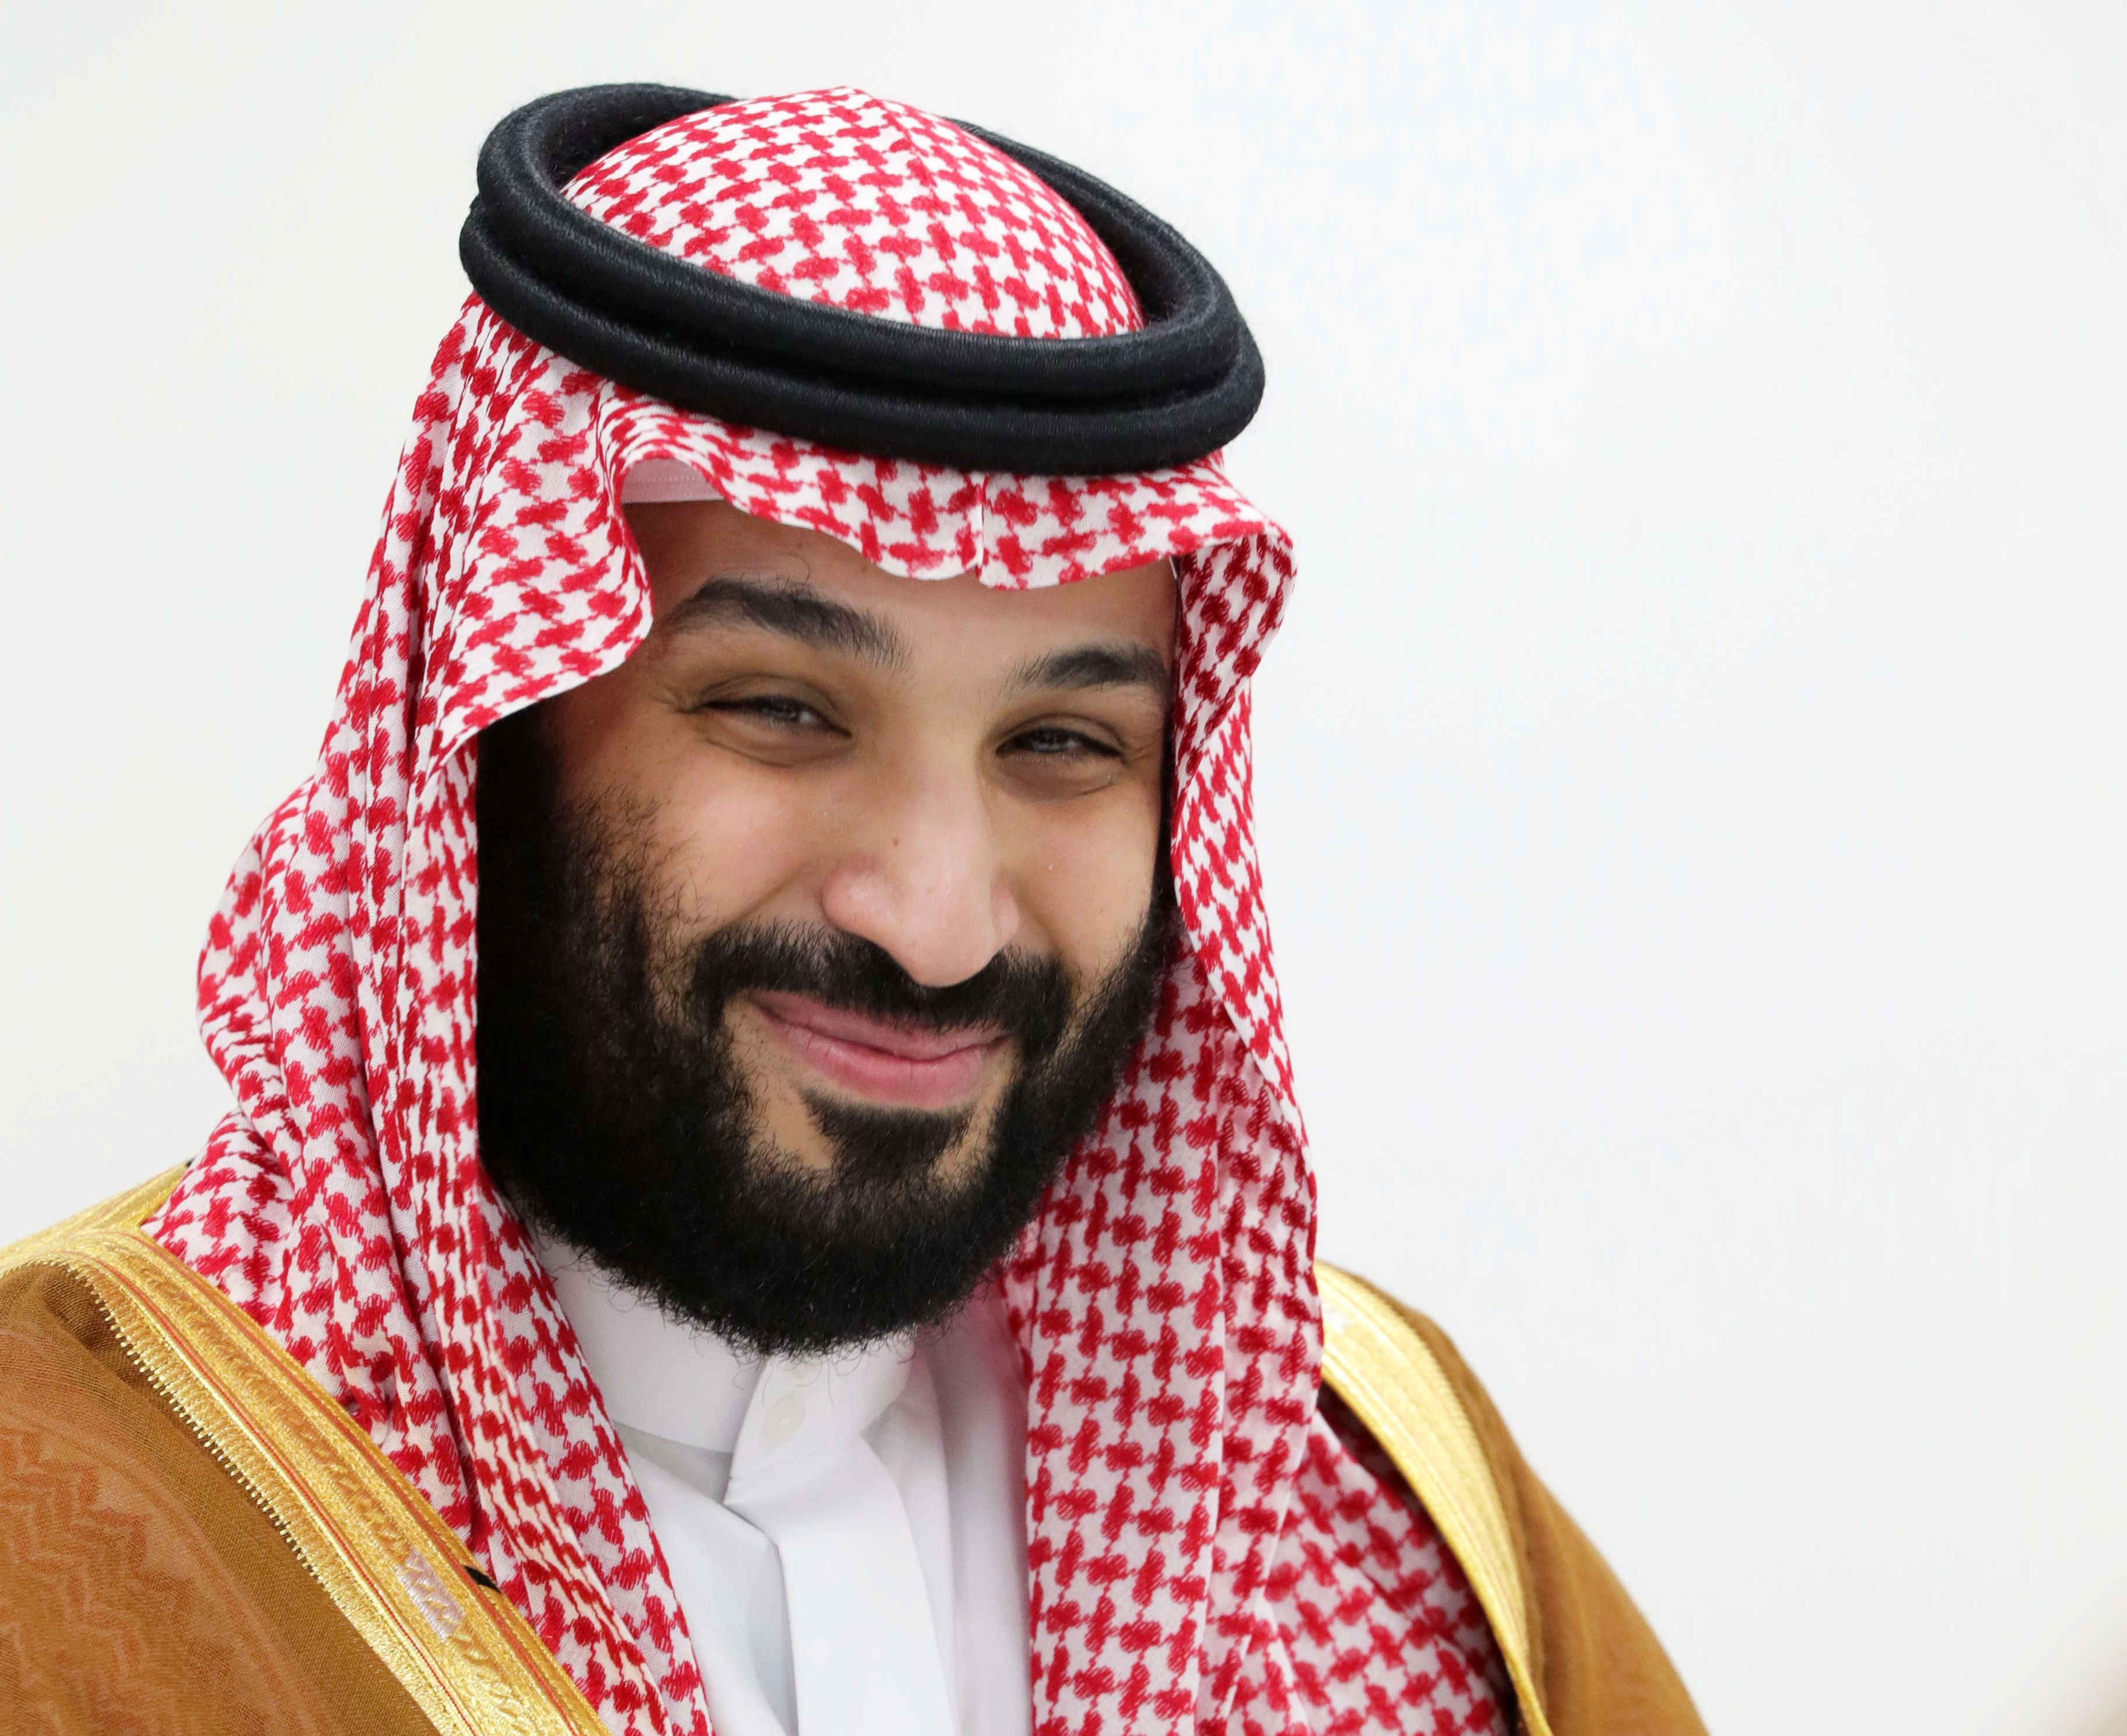 El príncipe heredero de Arabia Saudí, Mohamed bin Salman, en una fotografía de archivo. EFE/EPA/MIKHAEL KLIMENTYEV/SPUTNIK/KREMLIN POOL 